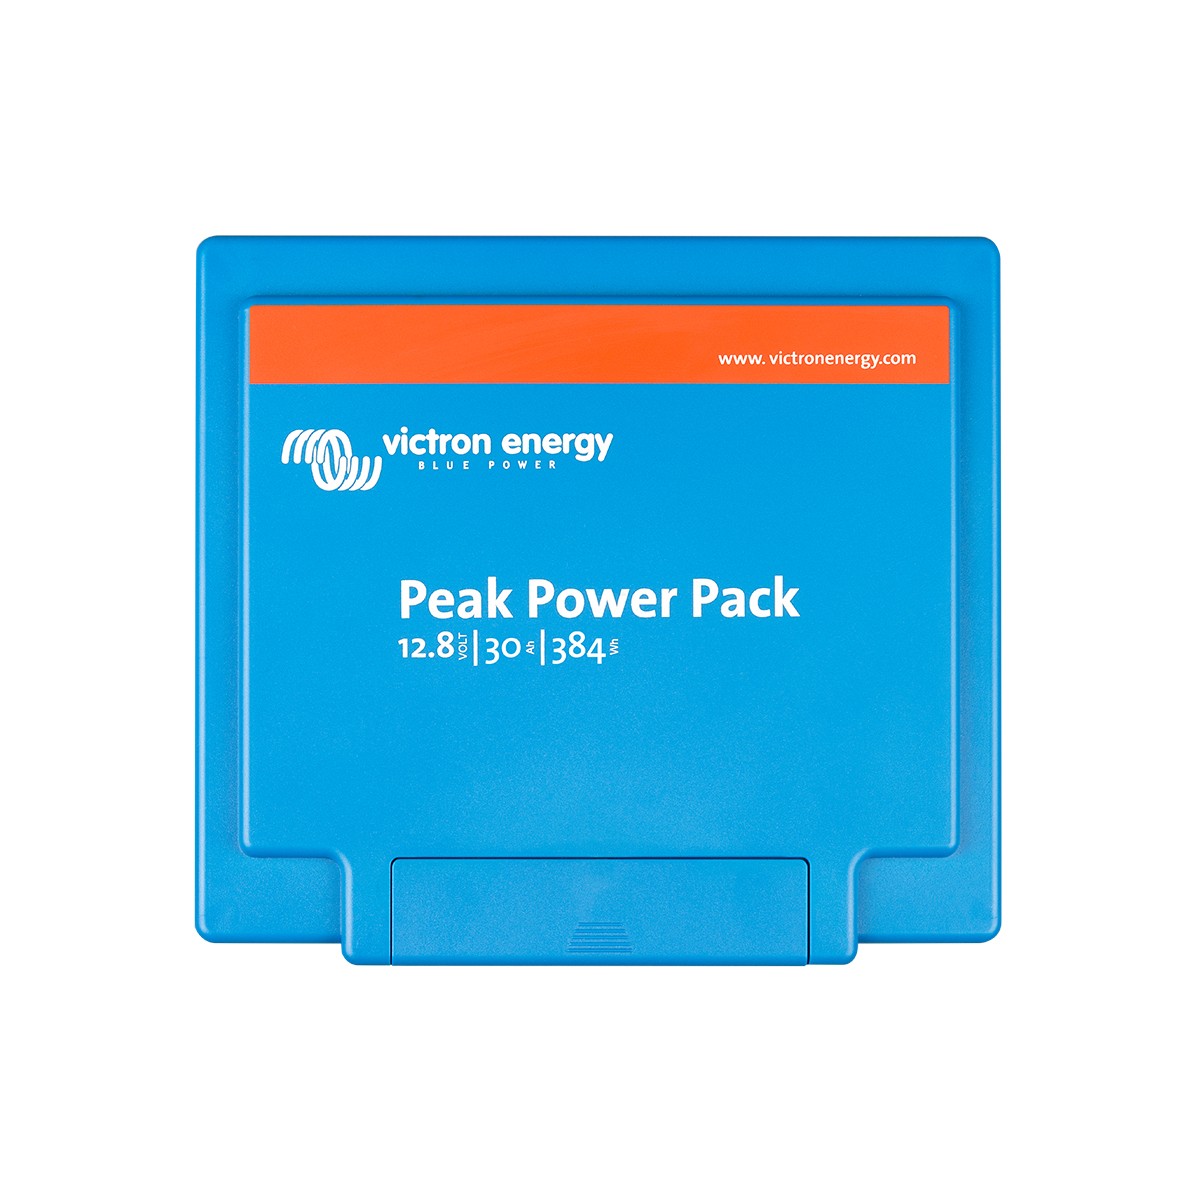 Akku Peak Power Pack 12,8 V/30 Ah Victron Energy